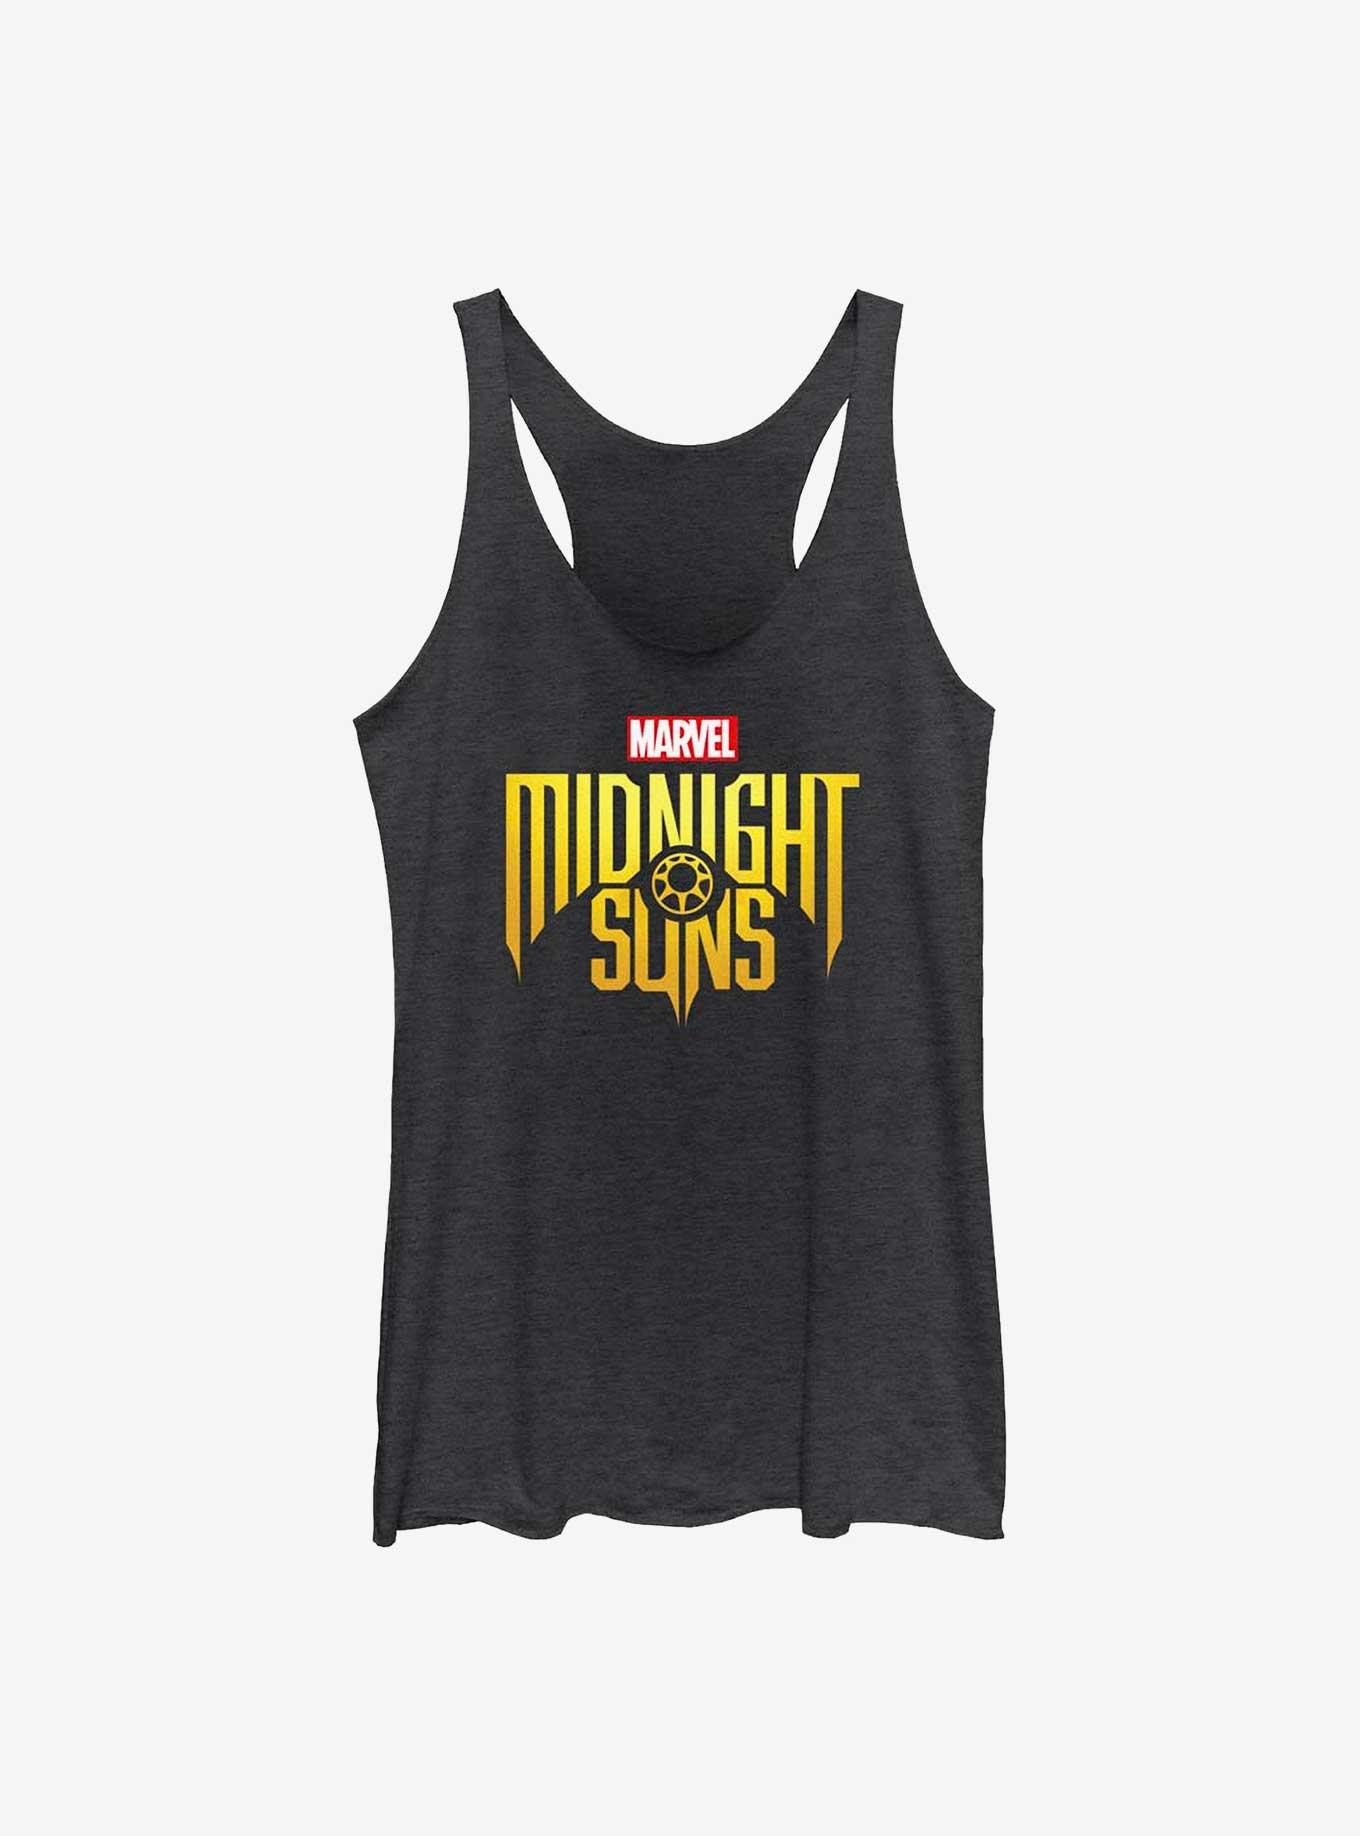 Marvel Midnight Suns Logo Girls Tank